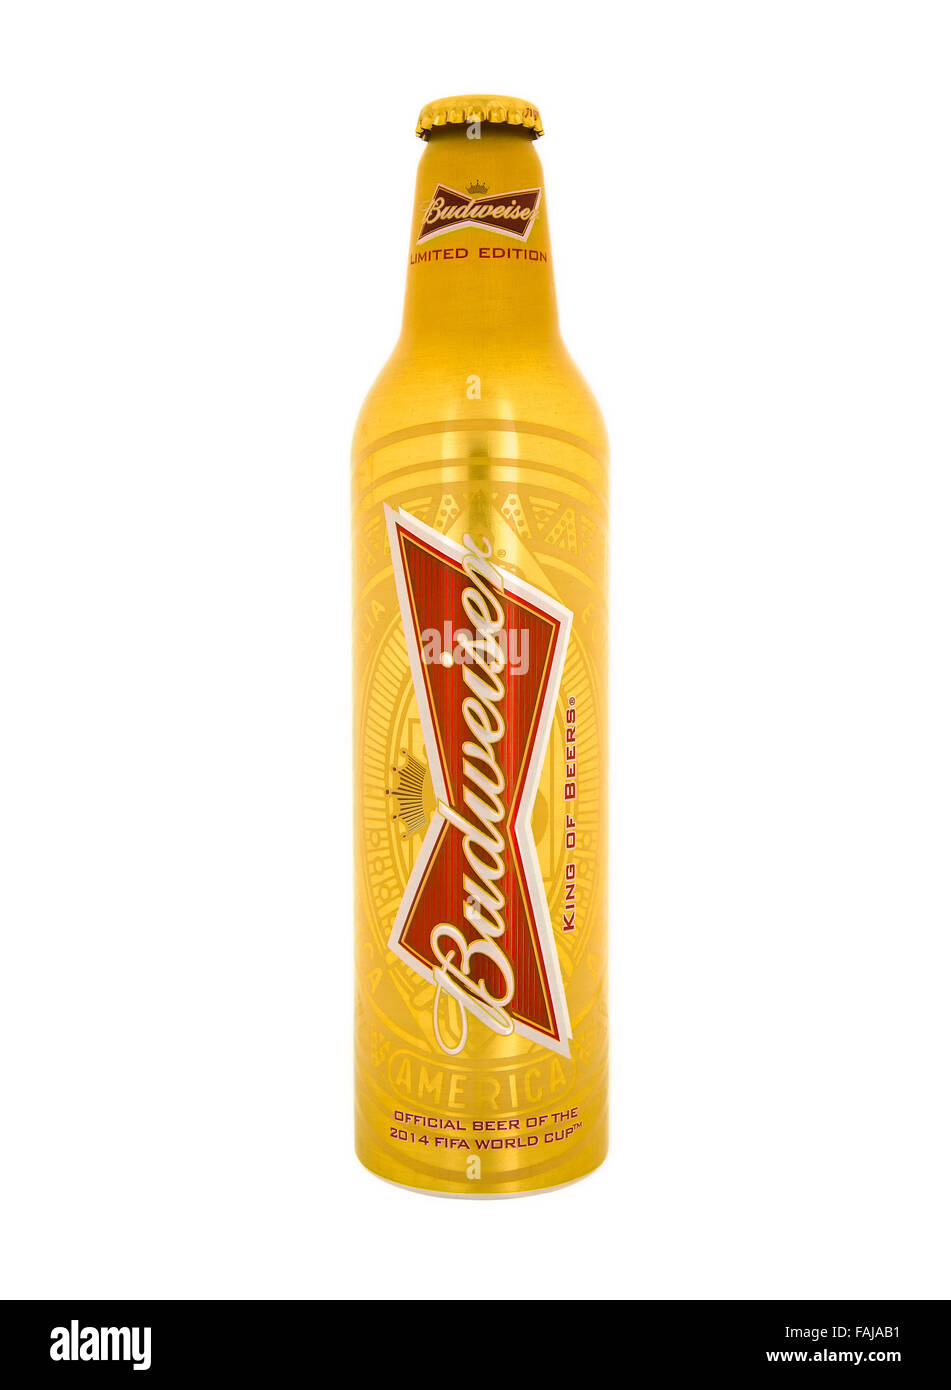 Bouteille de bière Budweiser en édition limitée pour la Coupe du Monde de Football FIFA 2014 sur un fond blanc. Banque D'Images